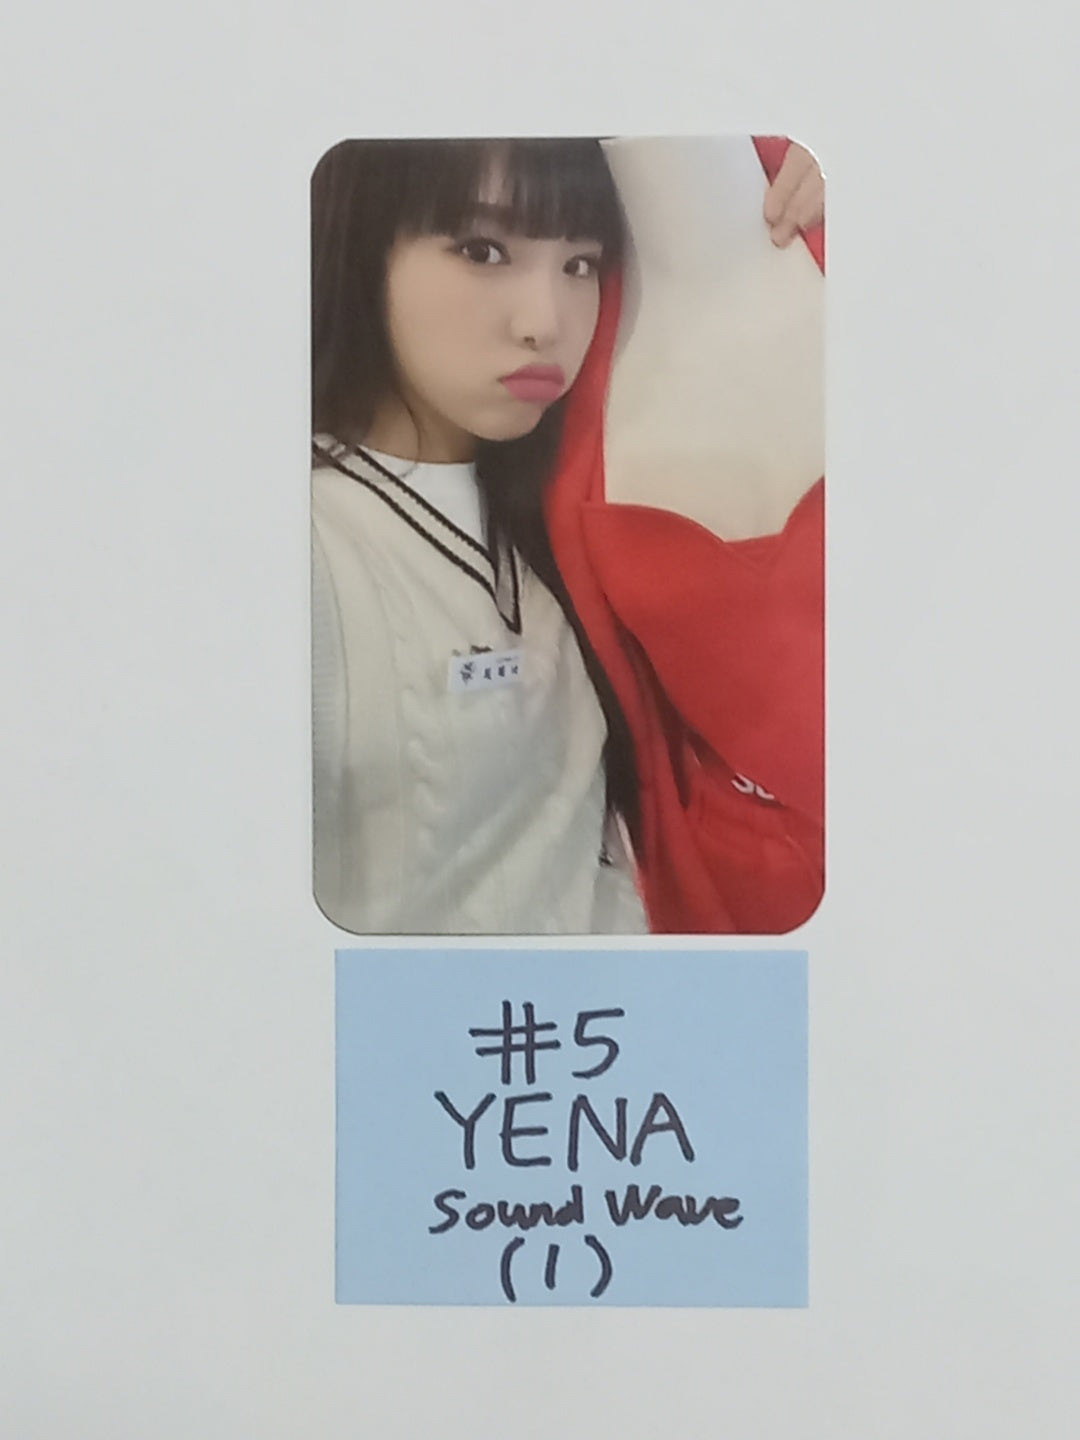 YENA "Yena Day Cafe" - Soundwave Event Photocard